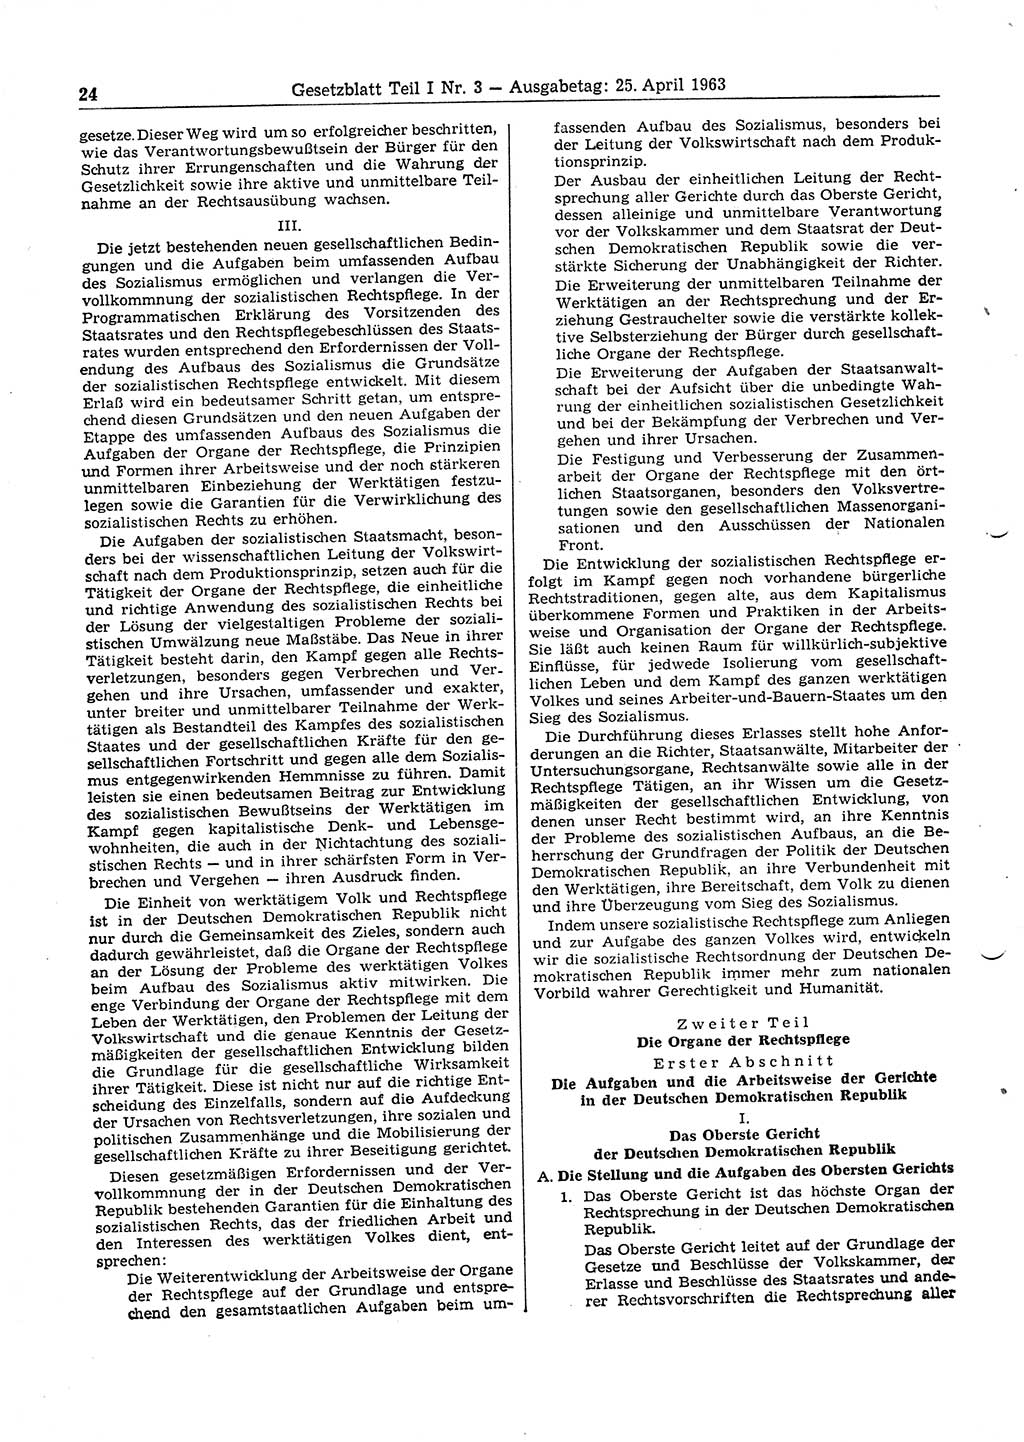 Gesetzblatt (GBl.) der Deutschen Demokratischen Republik (DDR) Teil Ⅰ 1963, Seite 24 (GBl. DDR Ⅰ 1963, S. 24)